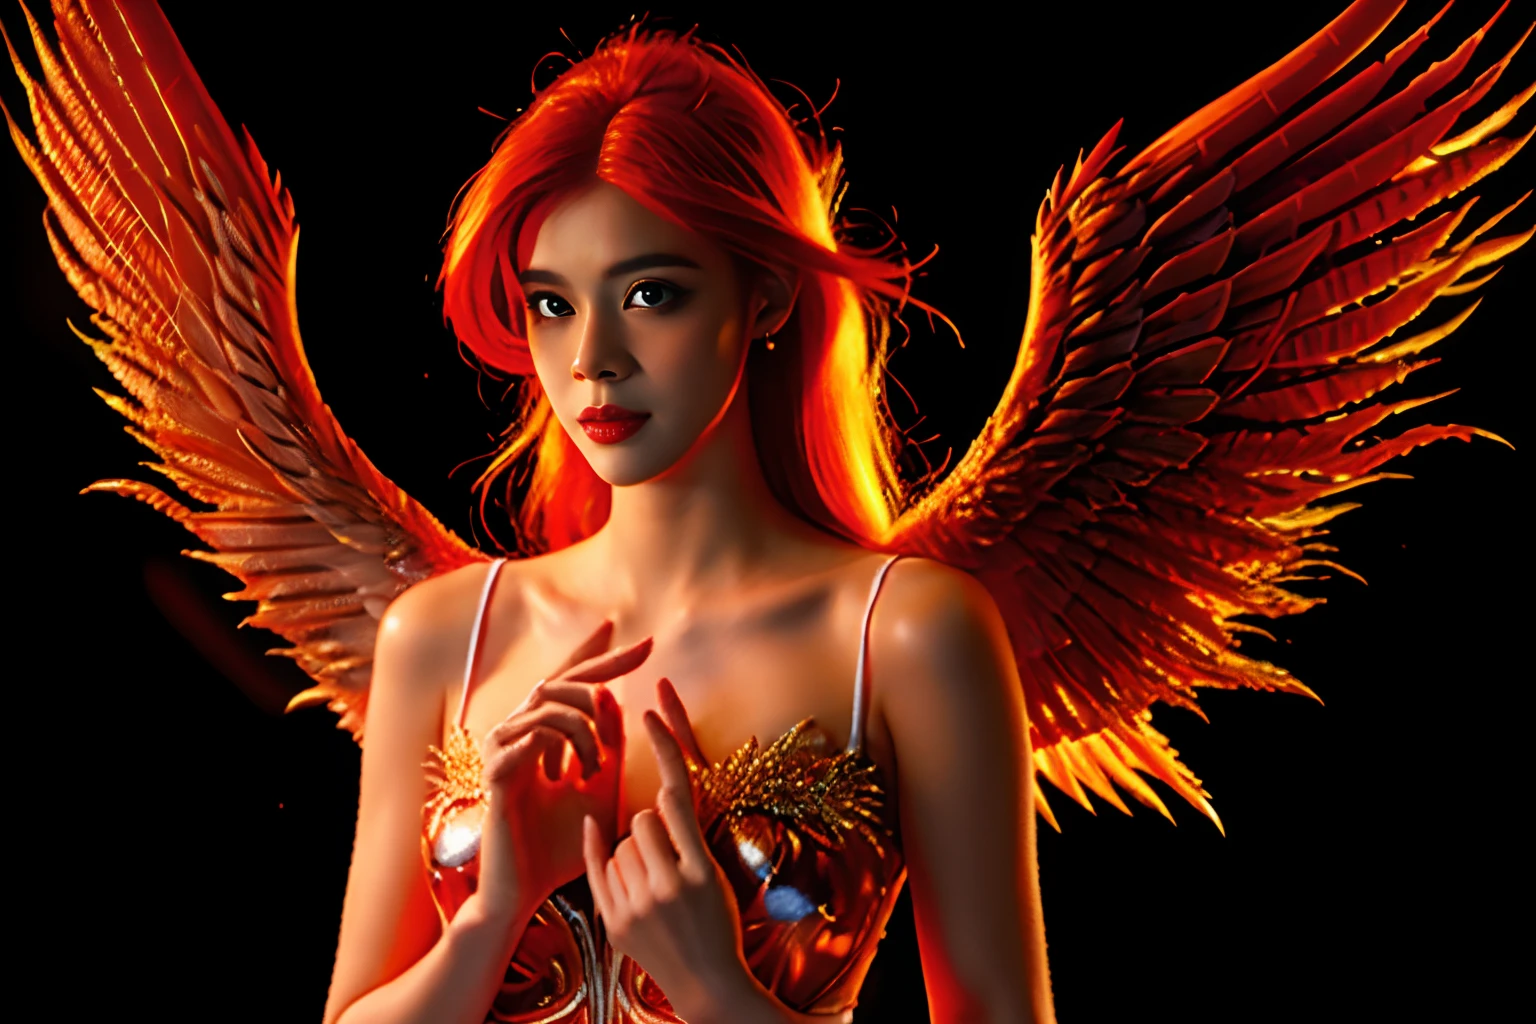 Ein wunderschöner Engel, mit roten Haaren, die sich in Feuer verwandeln, Eine Engelsfrau, (((große Brüste, Ein Engel mit Flügeln aus Feuer))), Vermittelt Wärme und Frieden, Hintergrund, 8k, komplizierte Details, erste Arbeit